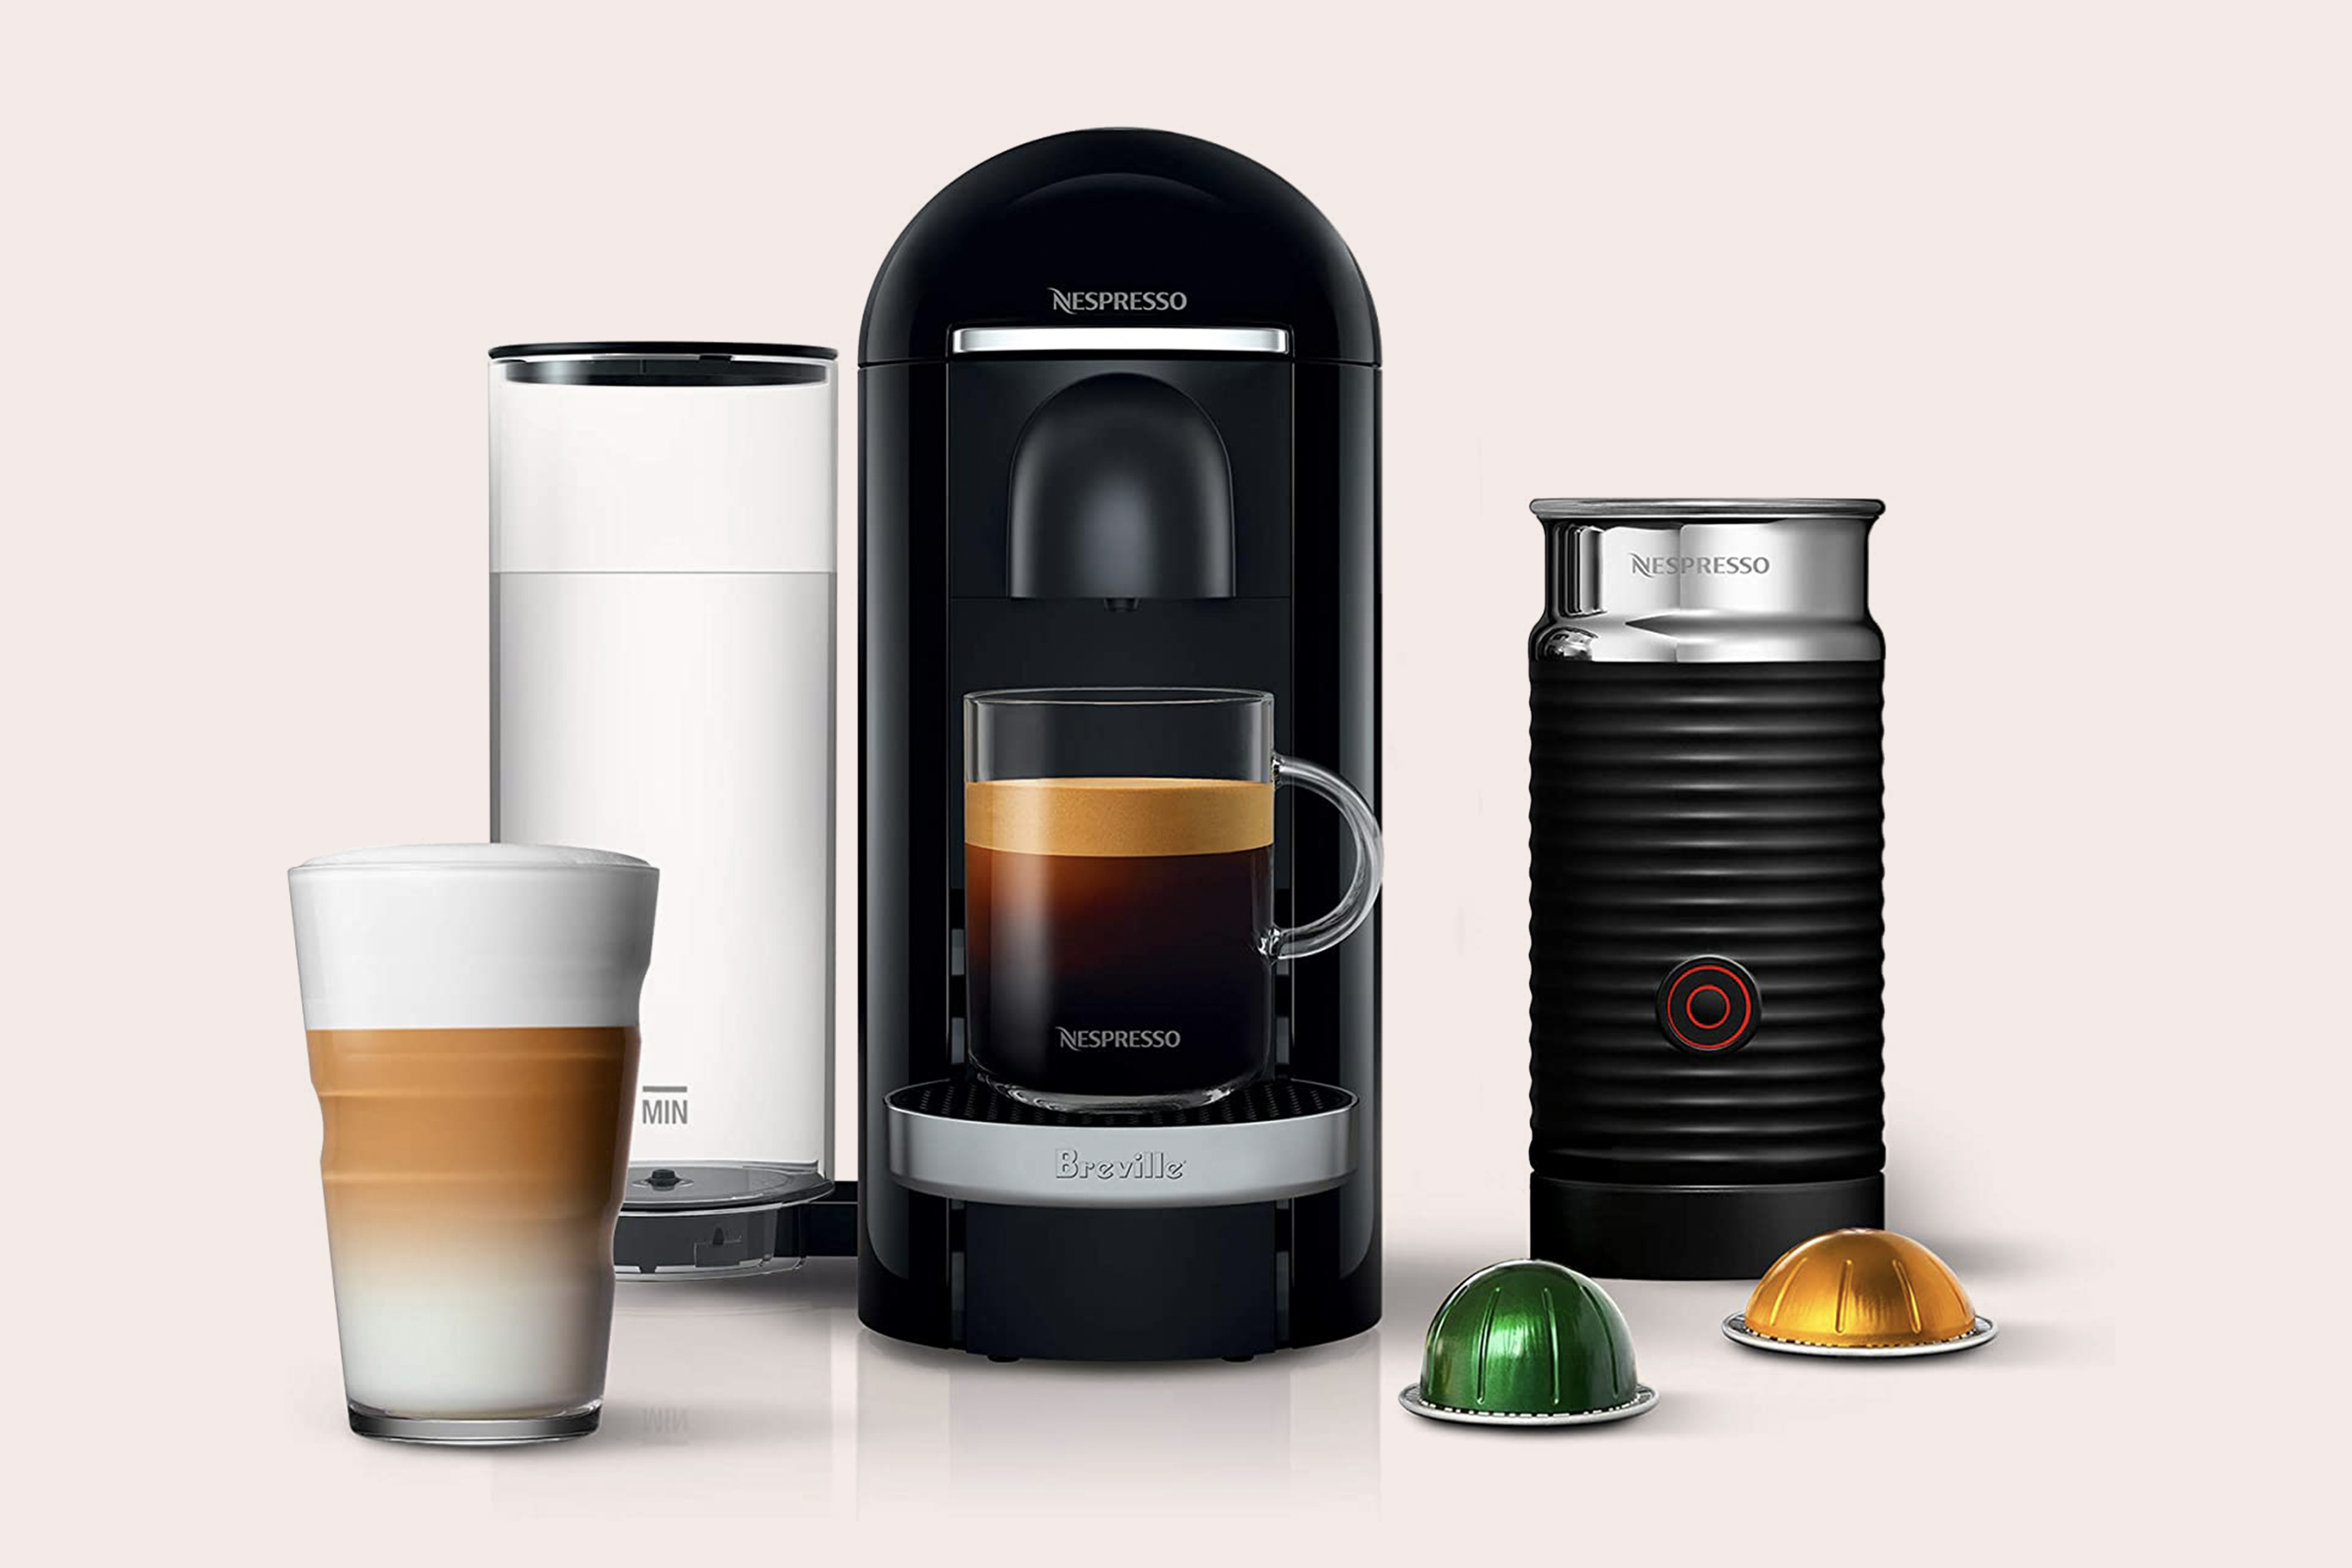 Nespresso VertuoPlus Deluxe Coffee and Espresso Machine